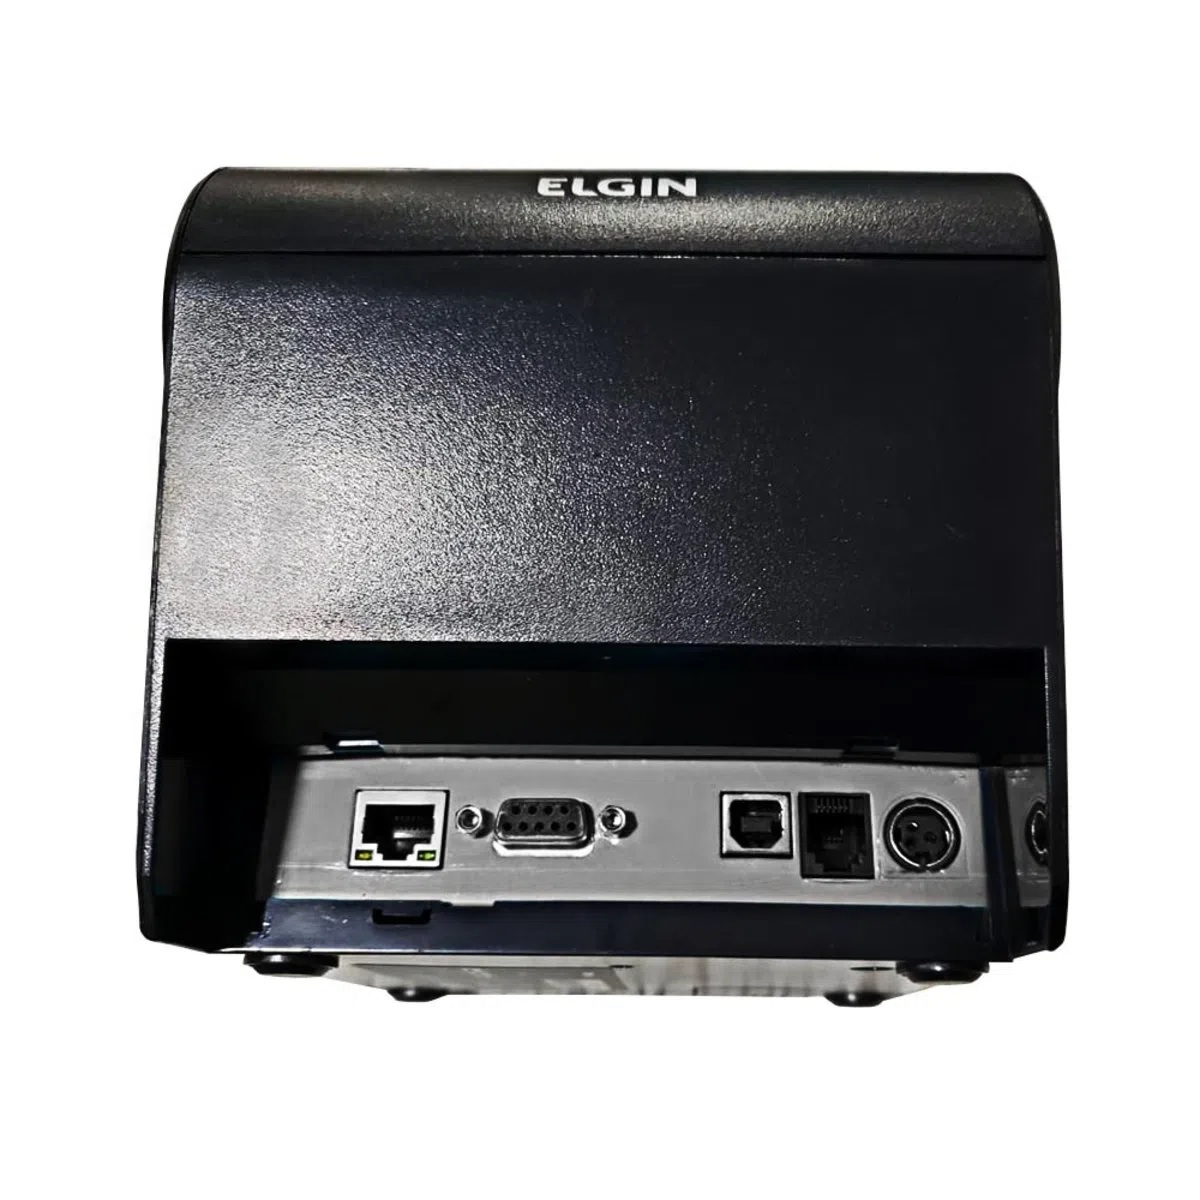 Impressora Não Fiscal Térmica Elgin I9 USB - 46I9UGCKD002